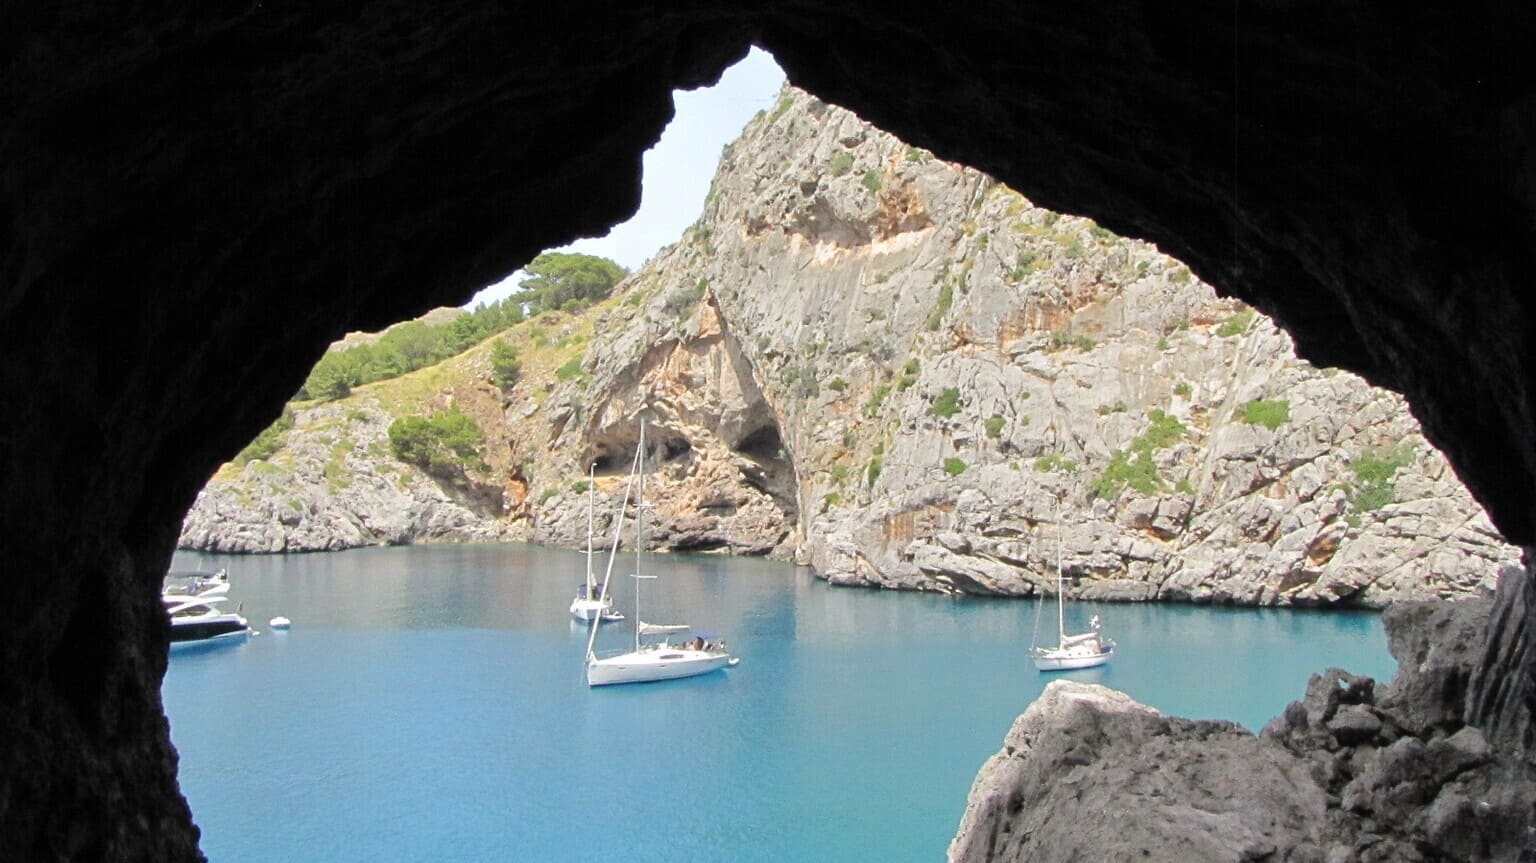 Widok z wnętrza tunelu prowadzącego do Torrent de Pareis, Majorka, co zobaczyć na Majorce